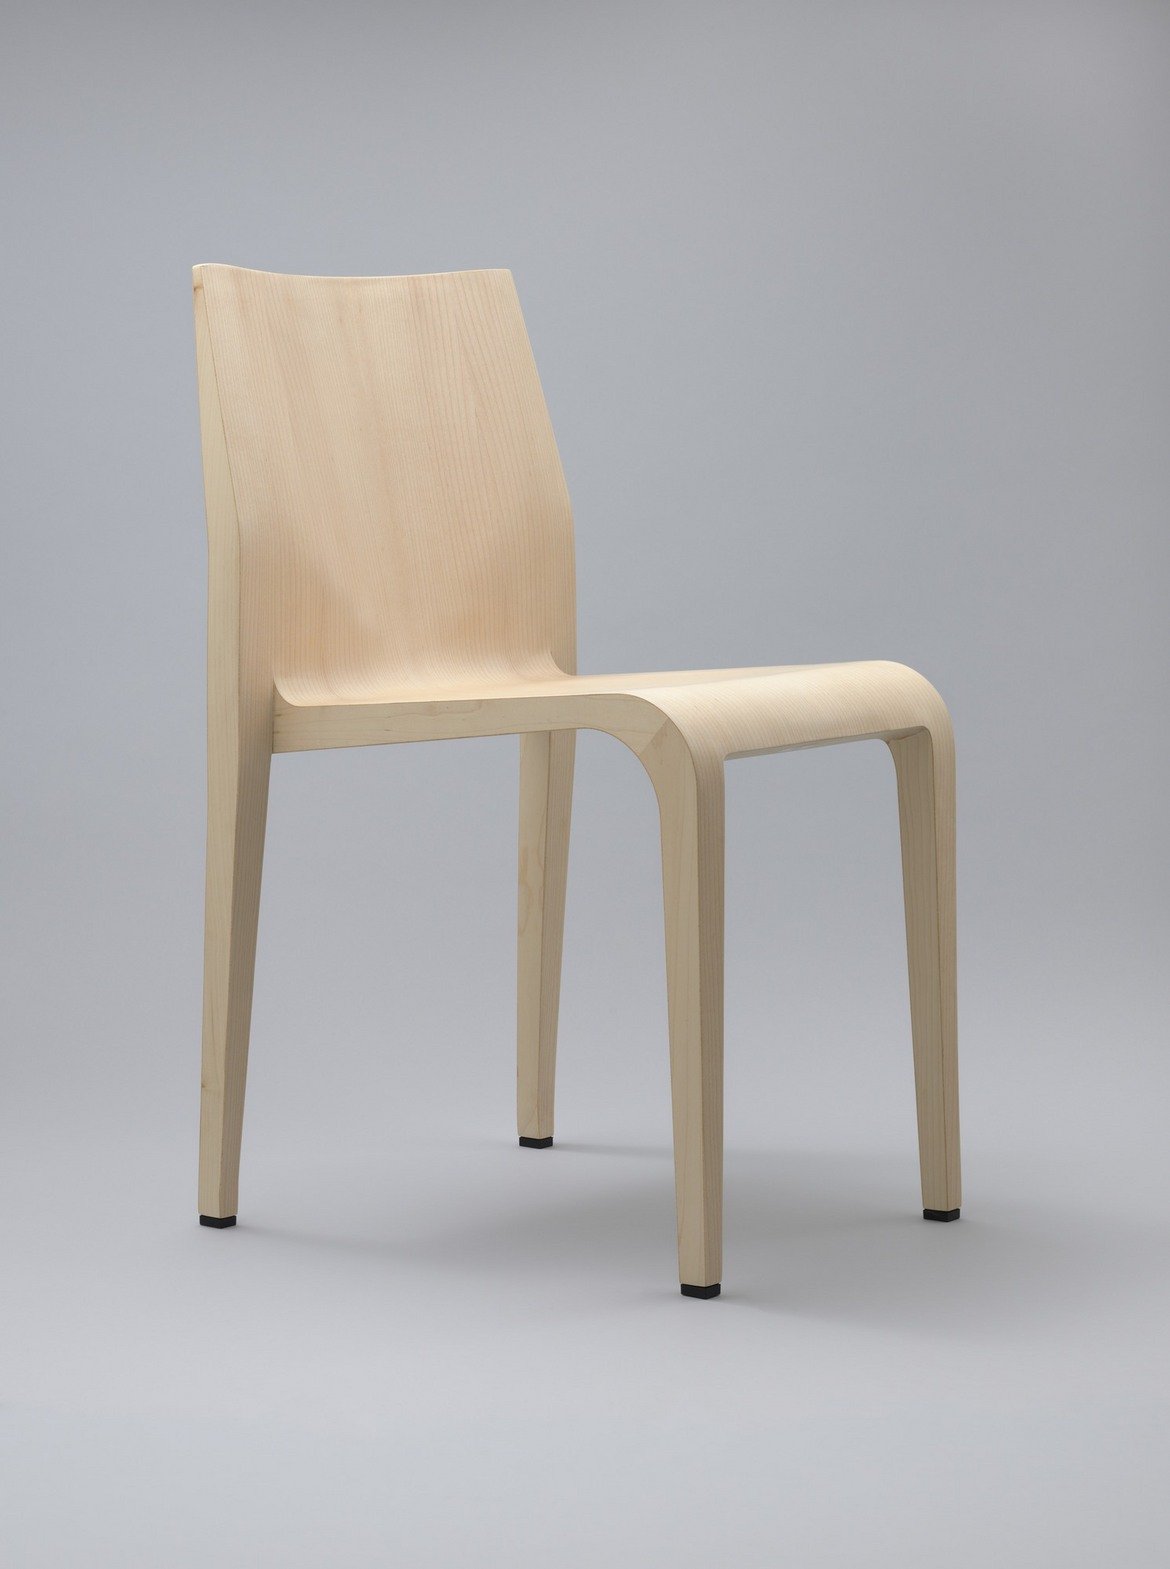 Столът Laleggera, 1996 г.  
Дизайнер: Рикардо Блумер
 
Дизайнерите винаги са искали да създадат уникален модел на стол, въпреки че историята на индустрията е достатъчно богата на отлични екземпляри. И все пак дизайнът на стол е нещо като "свещен Граал" за професионалистите. Повечето опити за подобряване на визията и практичността са напразни, разбира се. Но през 1996 г. Рикардо Блумер прави Laleggera - един от малкото съвременни примери за мебелен дизайн, който обещава да придобие класически статус след десетилетия. Блумер използва най-новите производствени технологии, за да постигне както практическо, така и естетическо предимство спрямо своето вдъхновение - моделът Leggera на Джио Понти. Резултатът е елегантен и изключително лек стол, най-оригиналният дизайн в тази сфера за 50 години.